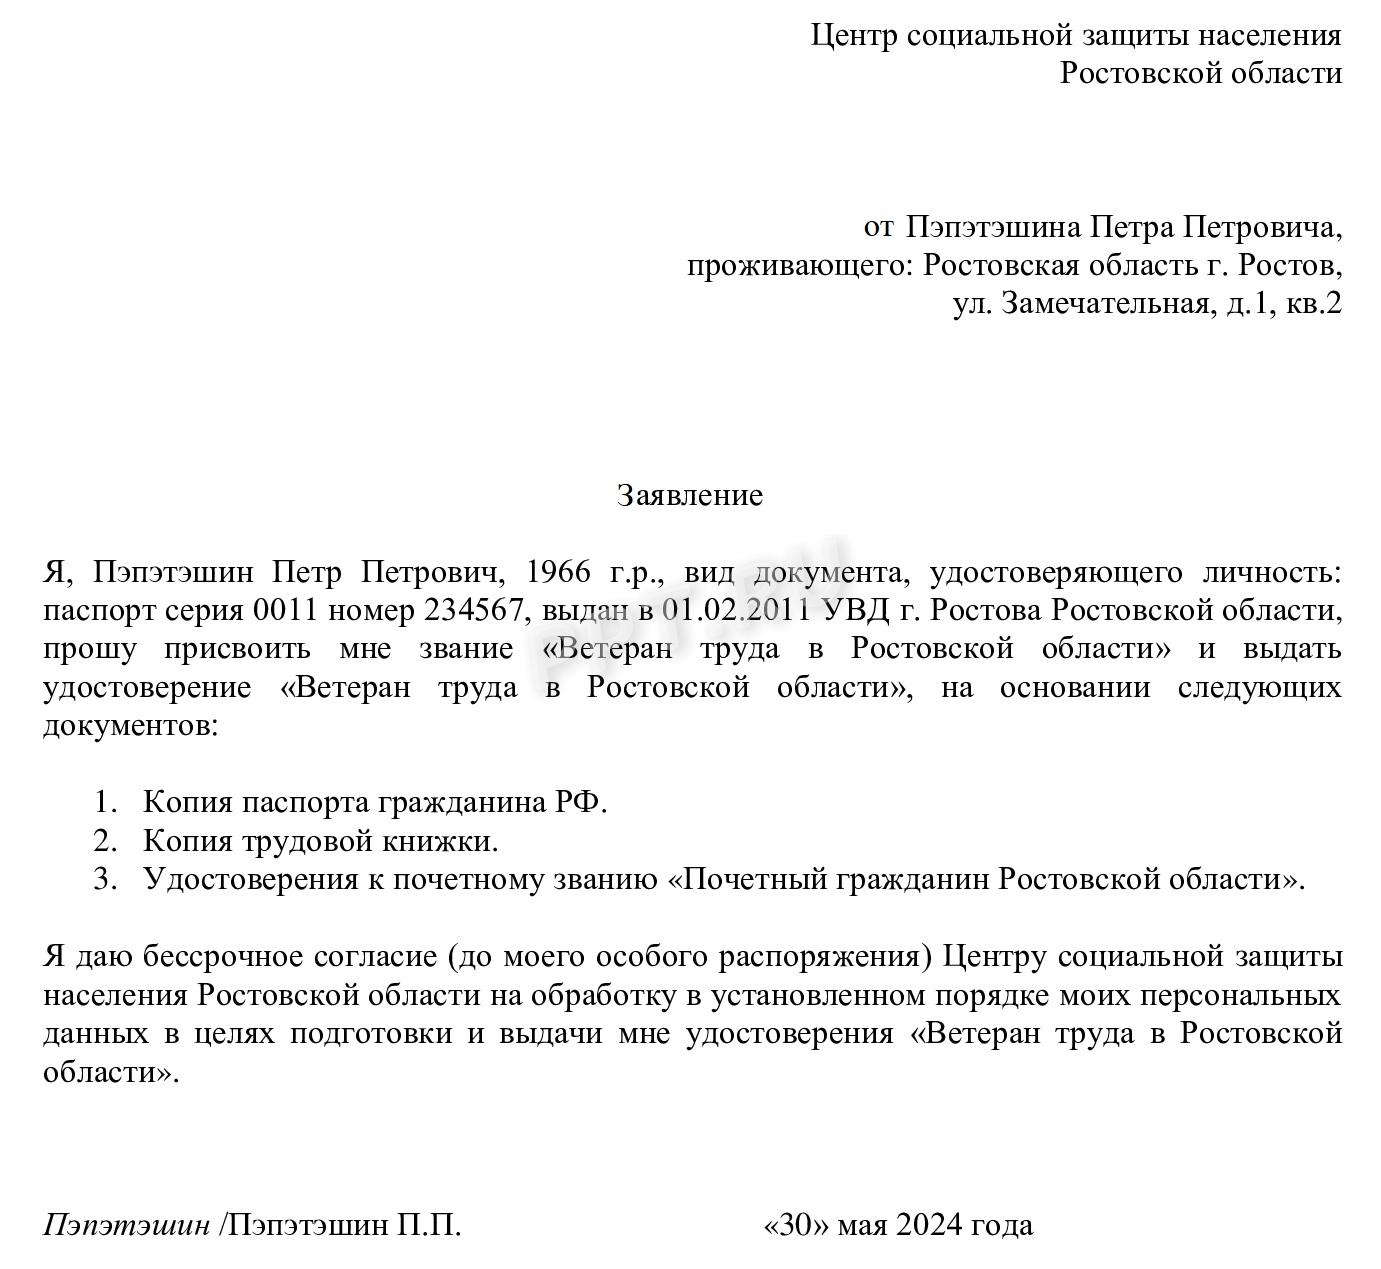 Образец заявления на присвоение звания «Ветеран труда в Ростовской области»